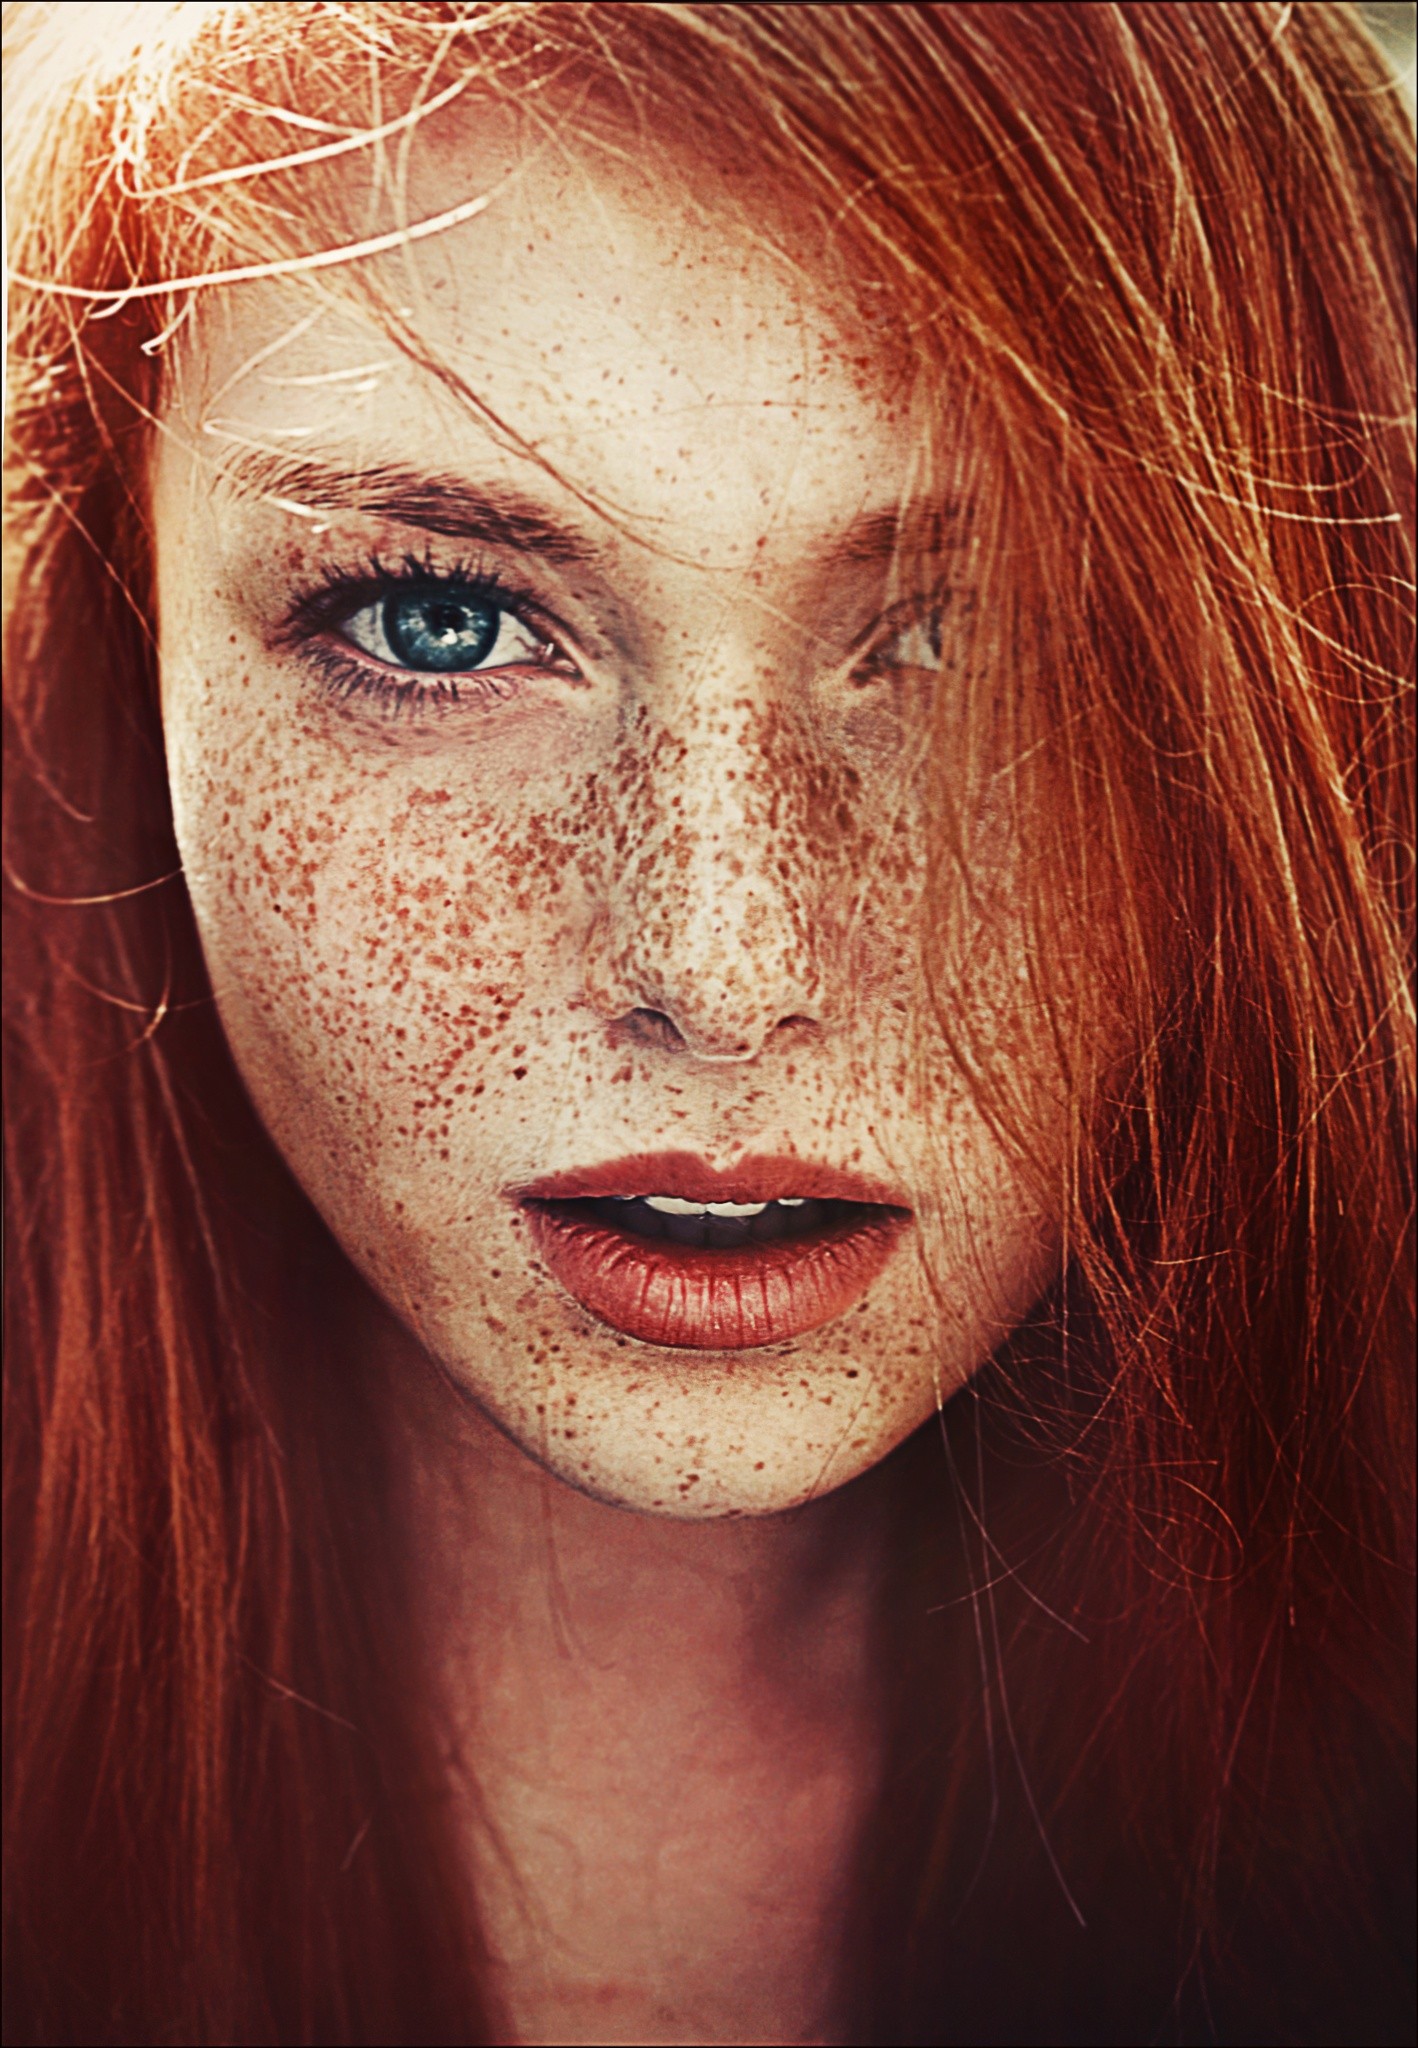 freckles redhead women blue eyes portrait Wallpaper